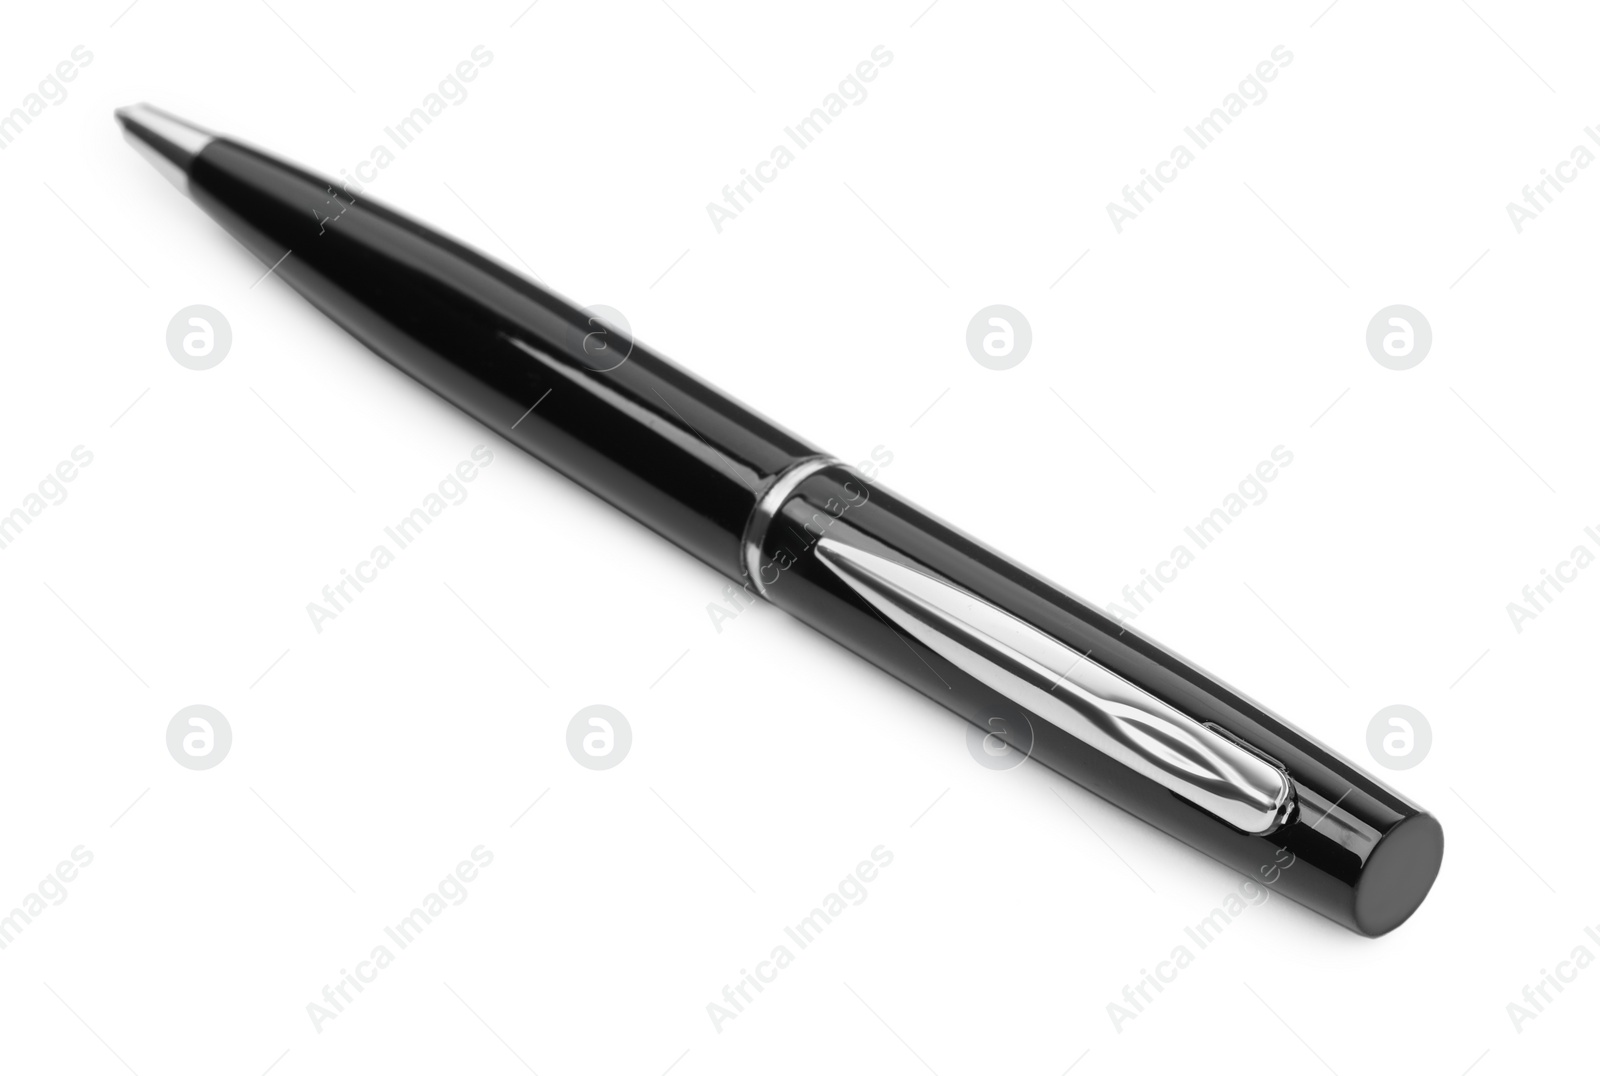 Photo of New stylish black pen isolated on white